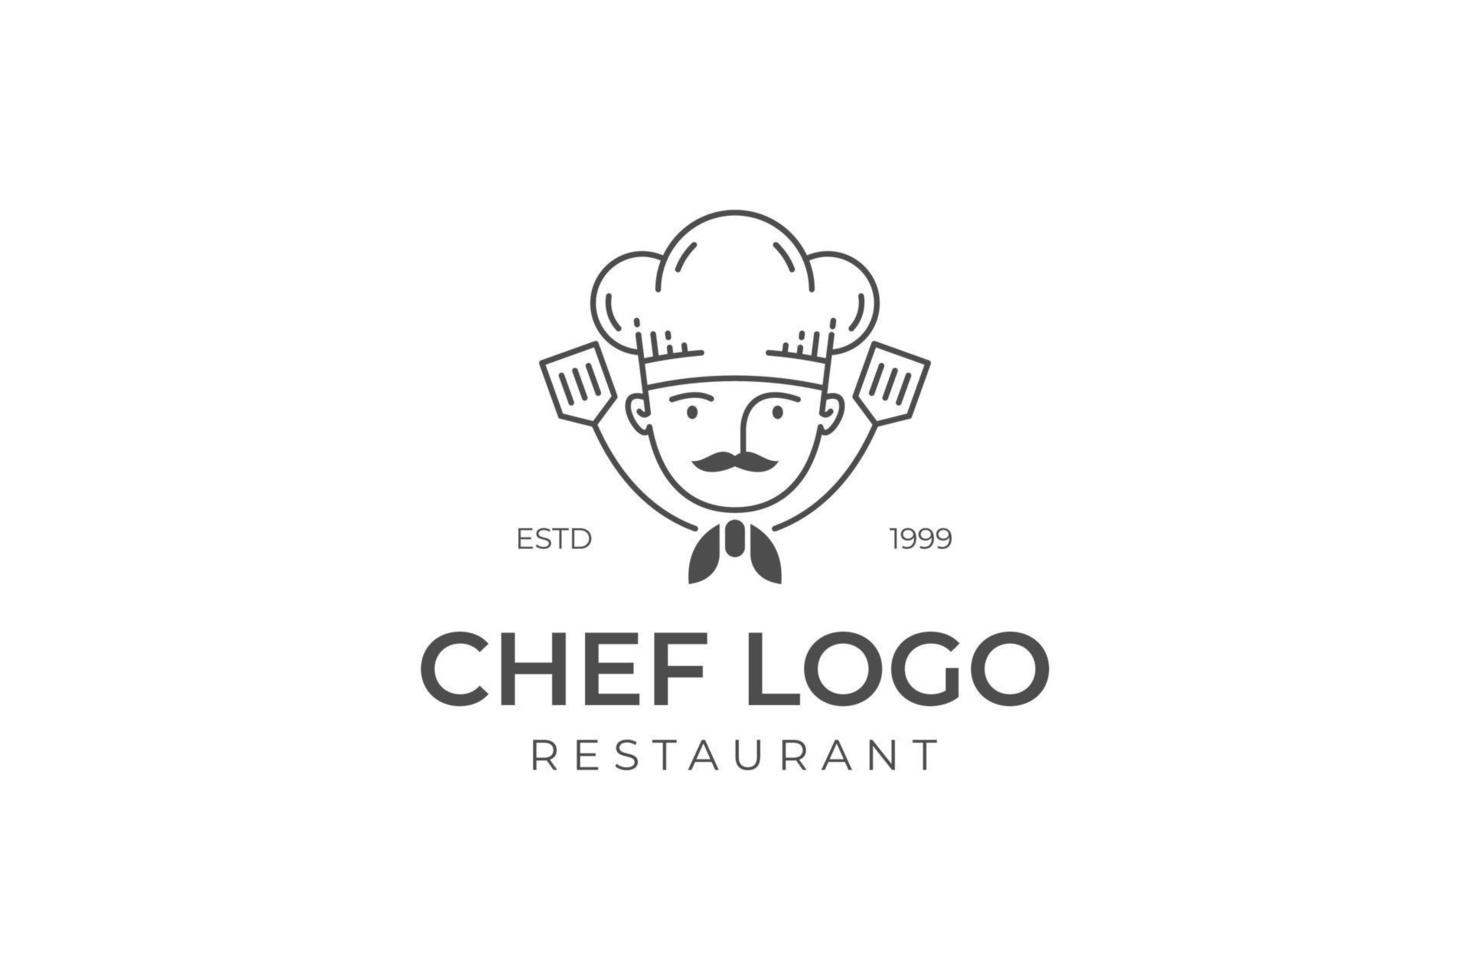 restaurante retrô vintage e design de logotipo de linha de chef profissional com um boné ou chapéu de chef e design de conceito de crachá vetor